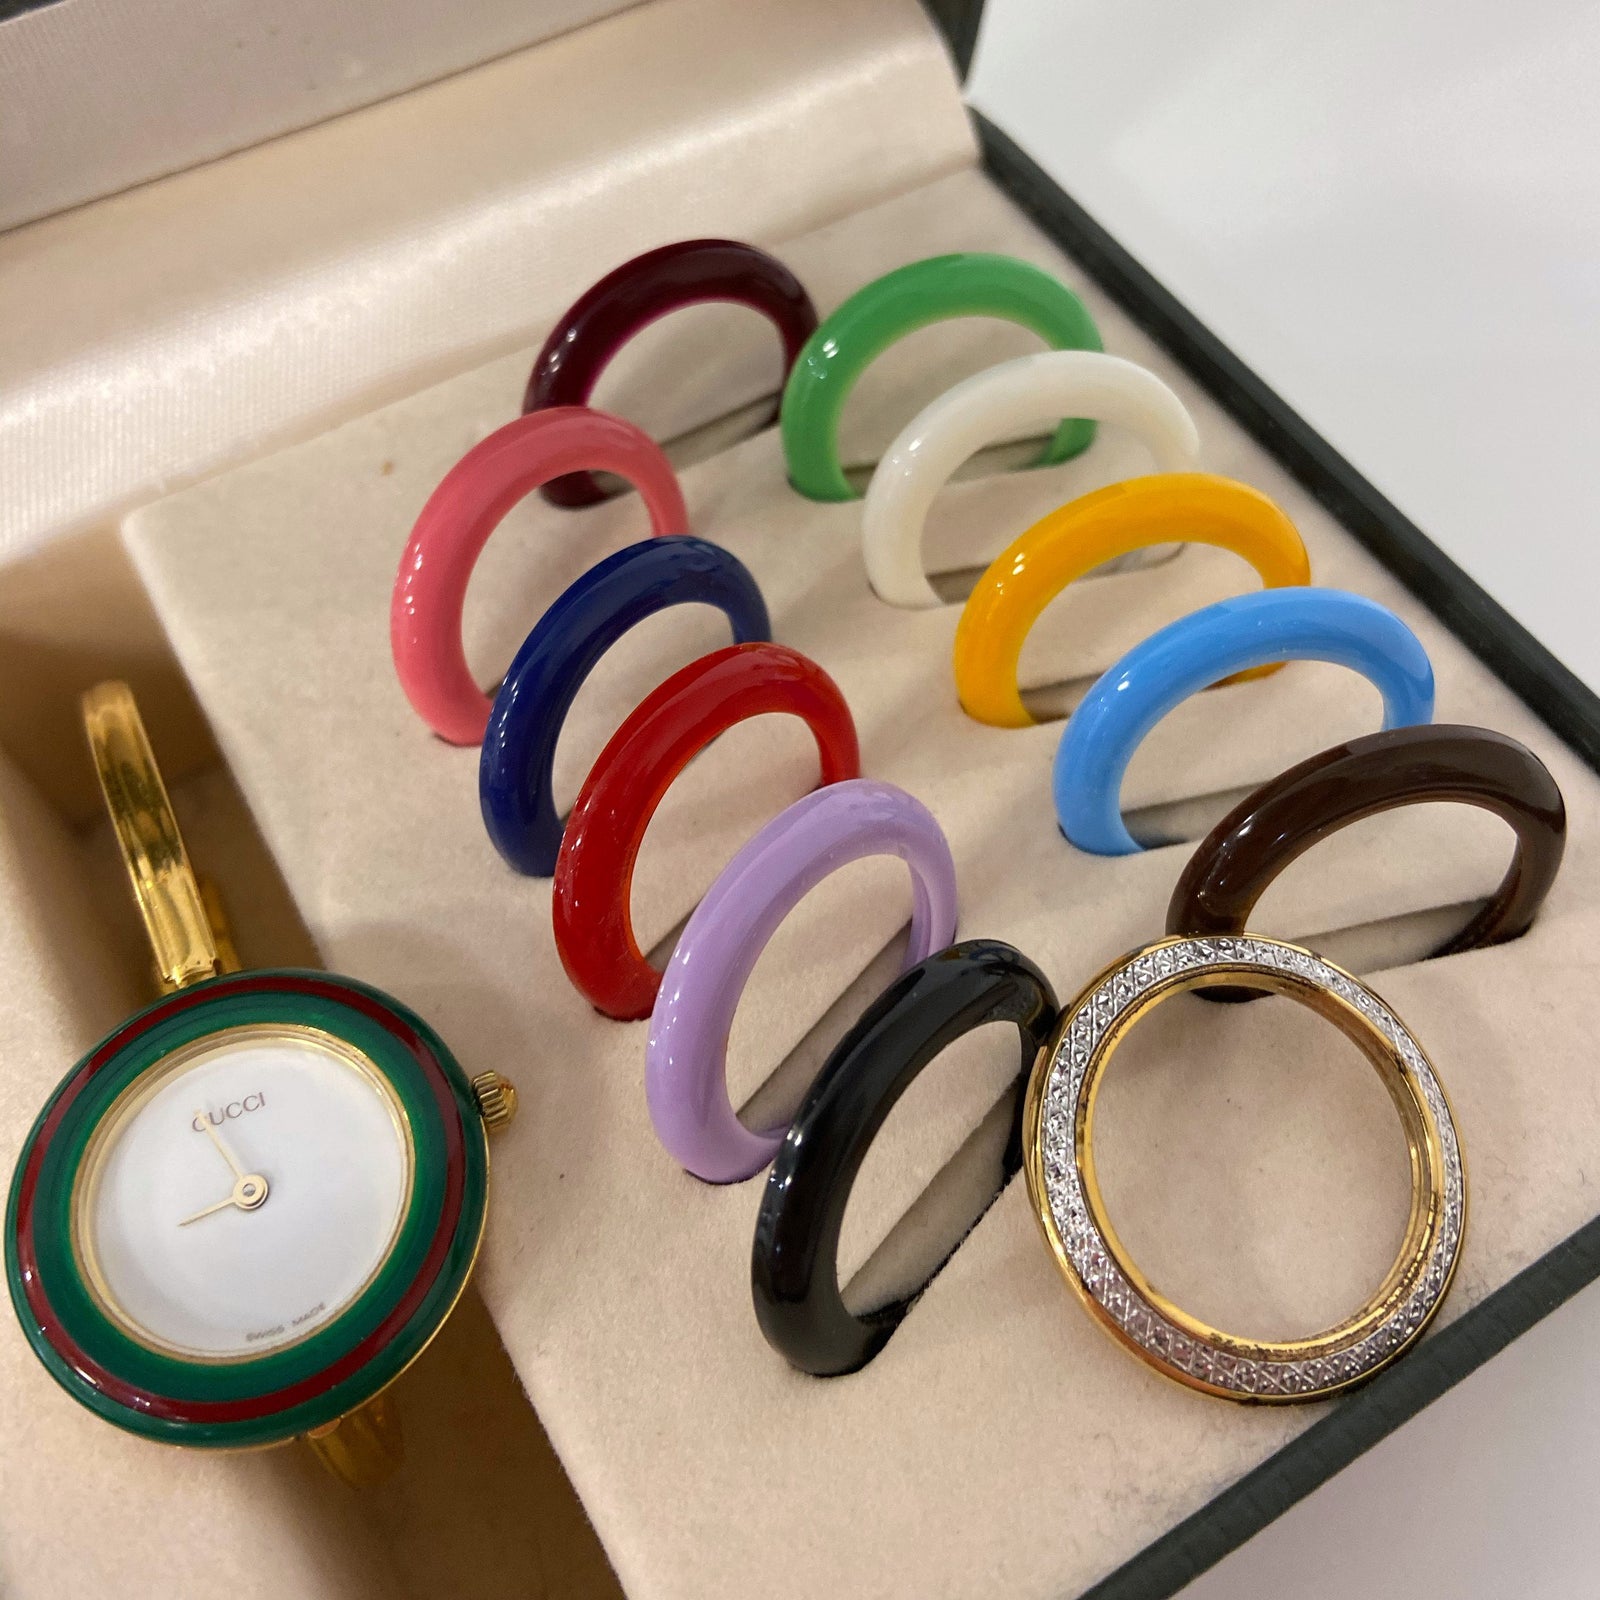 Multi Bezel Bracelet Watch